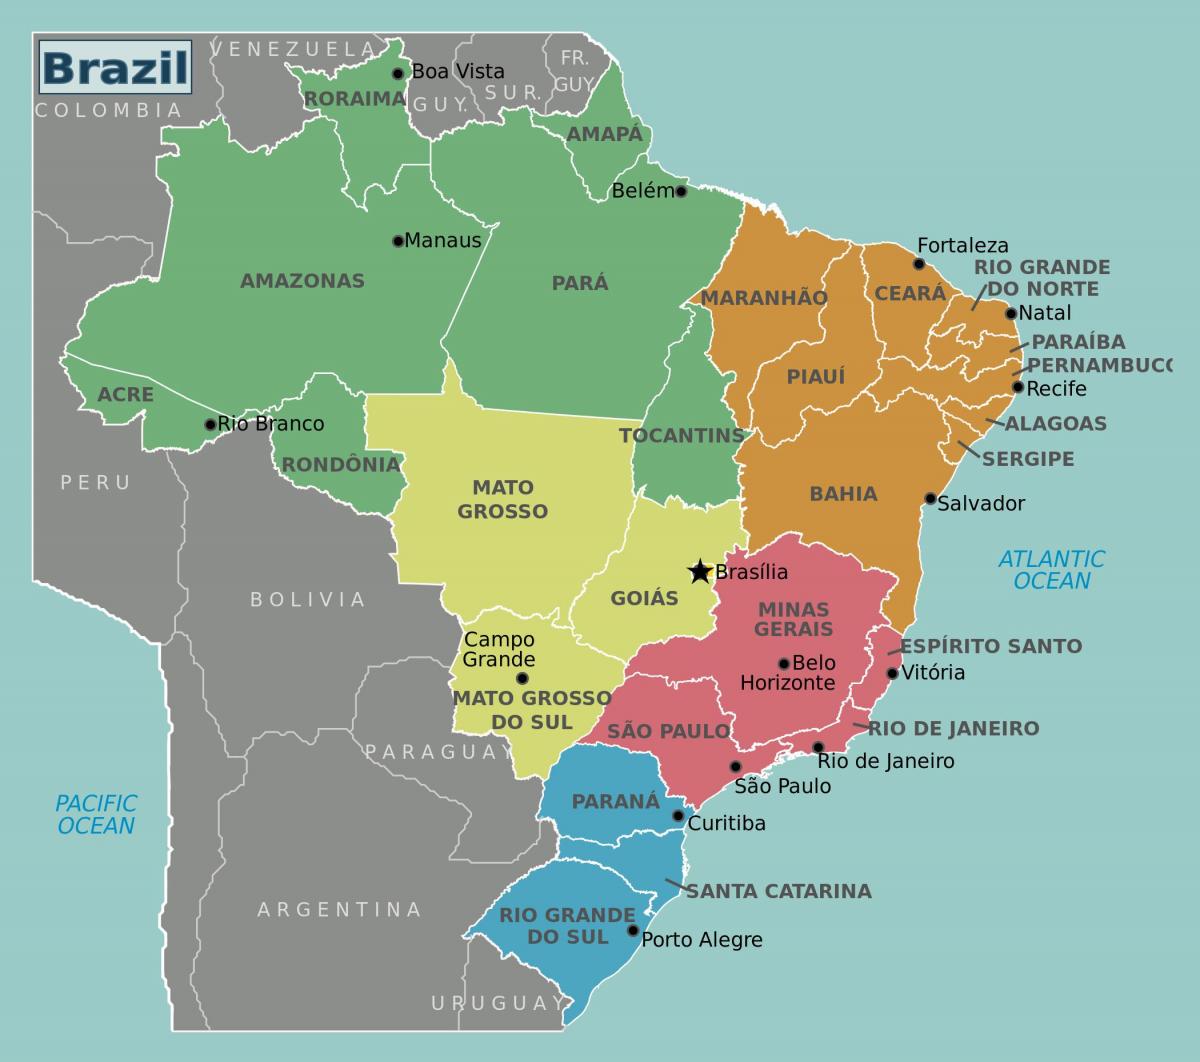 Mapa do Brasil com as principais cidades